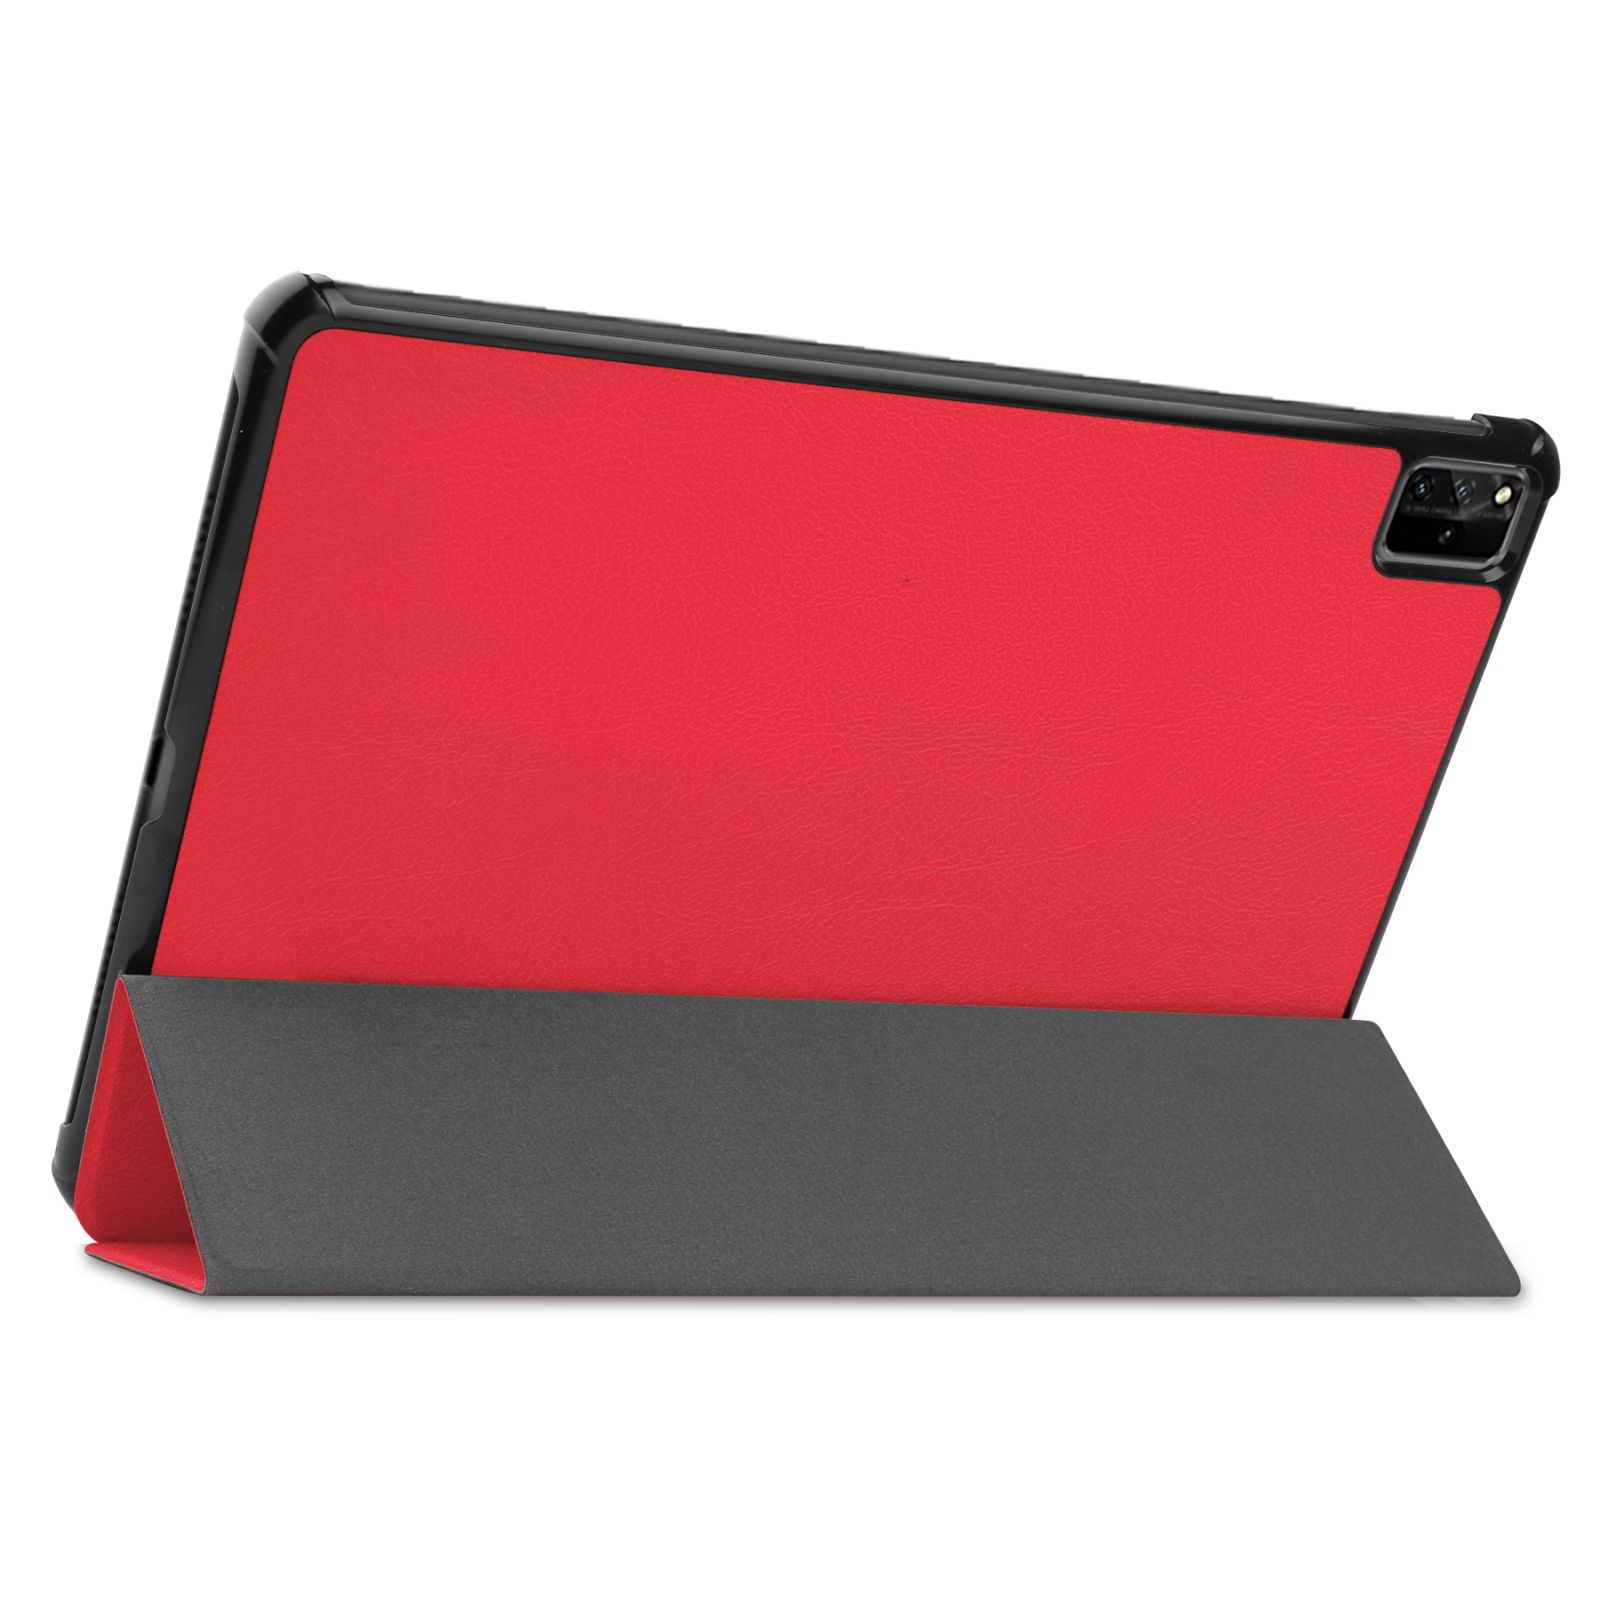 + Set (Schutzhülle Schutzglas) Huawei MatePad 12.6 2021 Zoll 2in1 Pro Rot Bookcover Case Kunstleder, für LOBWERK